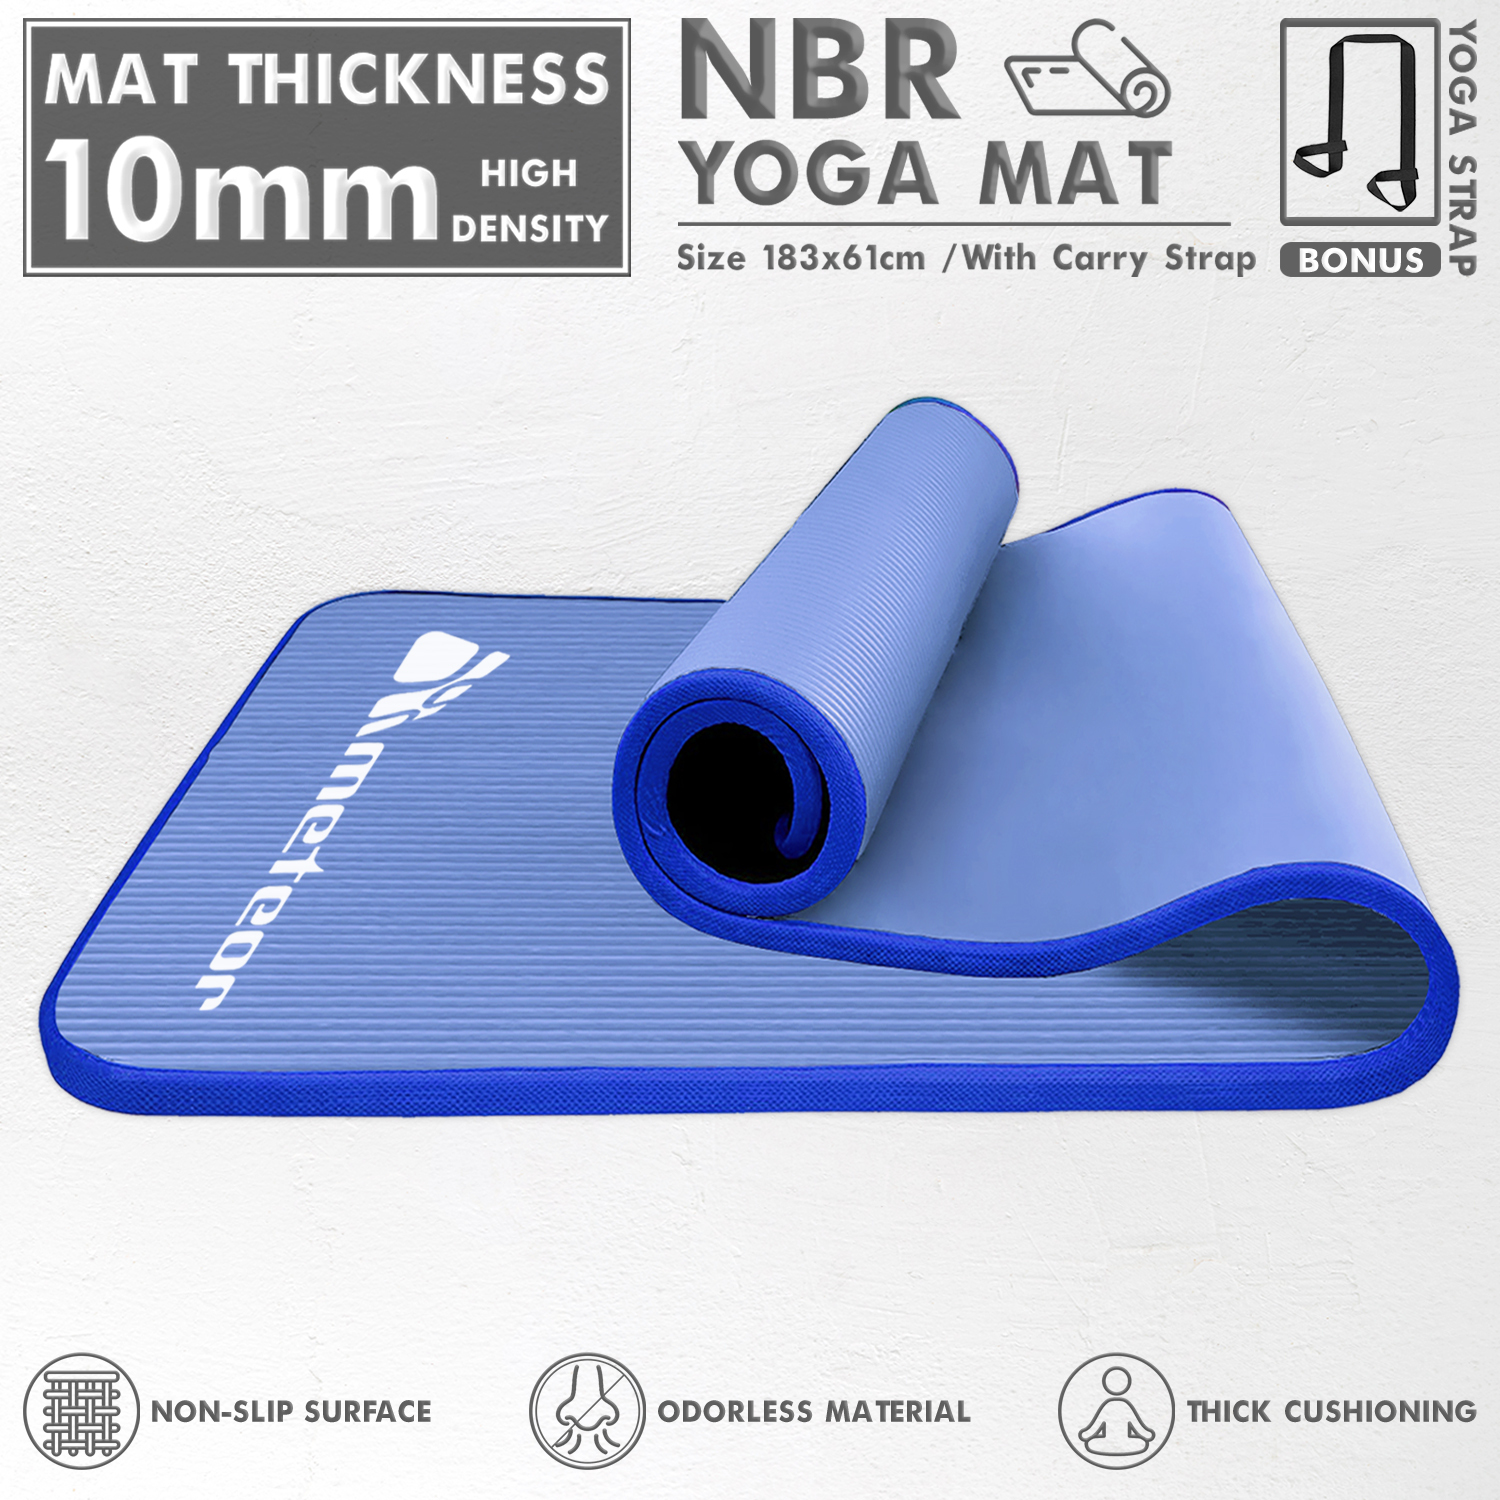 METEOR Non-slip Yoga Mat,Thick Yoga Mat,NBR Yoga Mat,Exercise Mat,Pilates  Mat,Workout Mat,Gym Mat, NBR Mat - 10mm Thickness 183x65cm